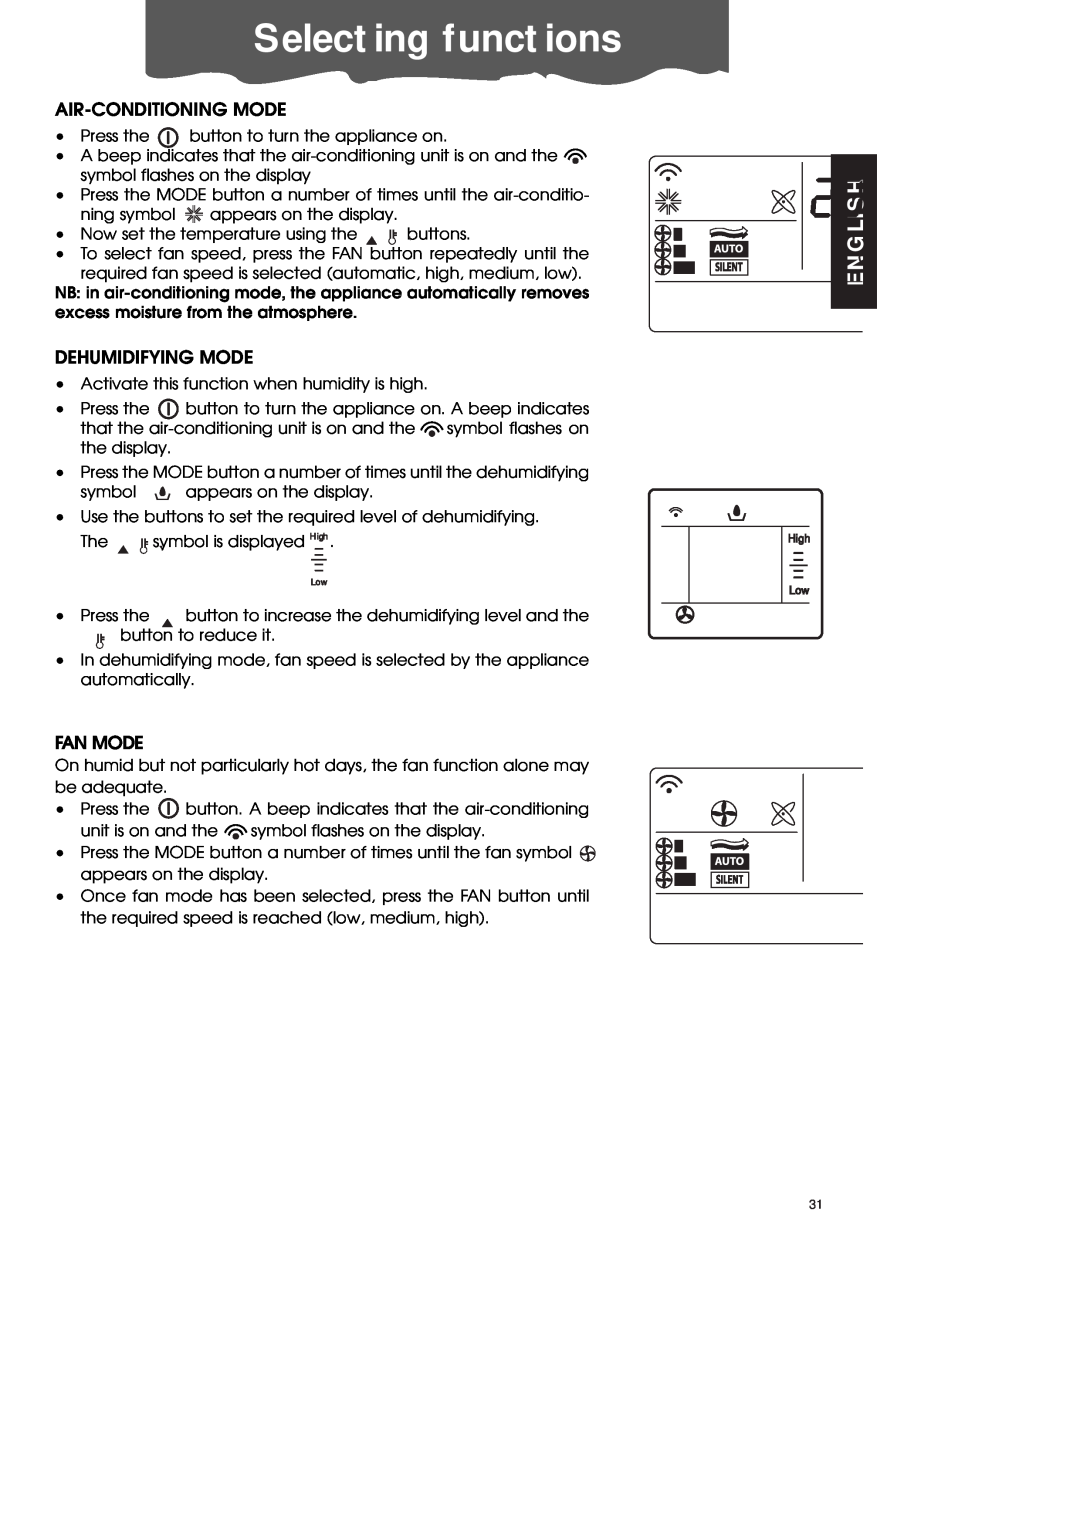 DeLonghi PAC70 ECO manual Selecting functions, Air-Conditioningmode, Dehumidifying Mode, Fan Mode, English 